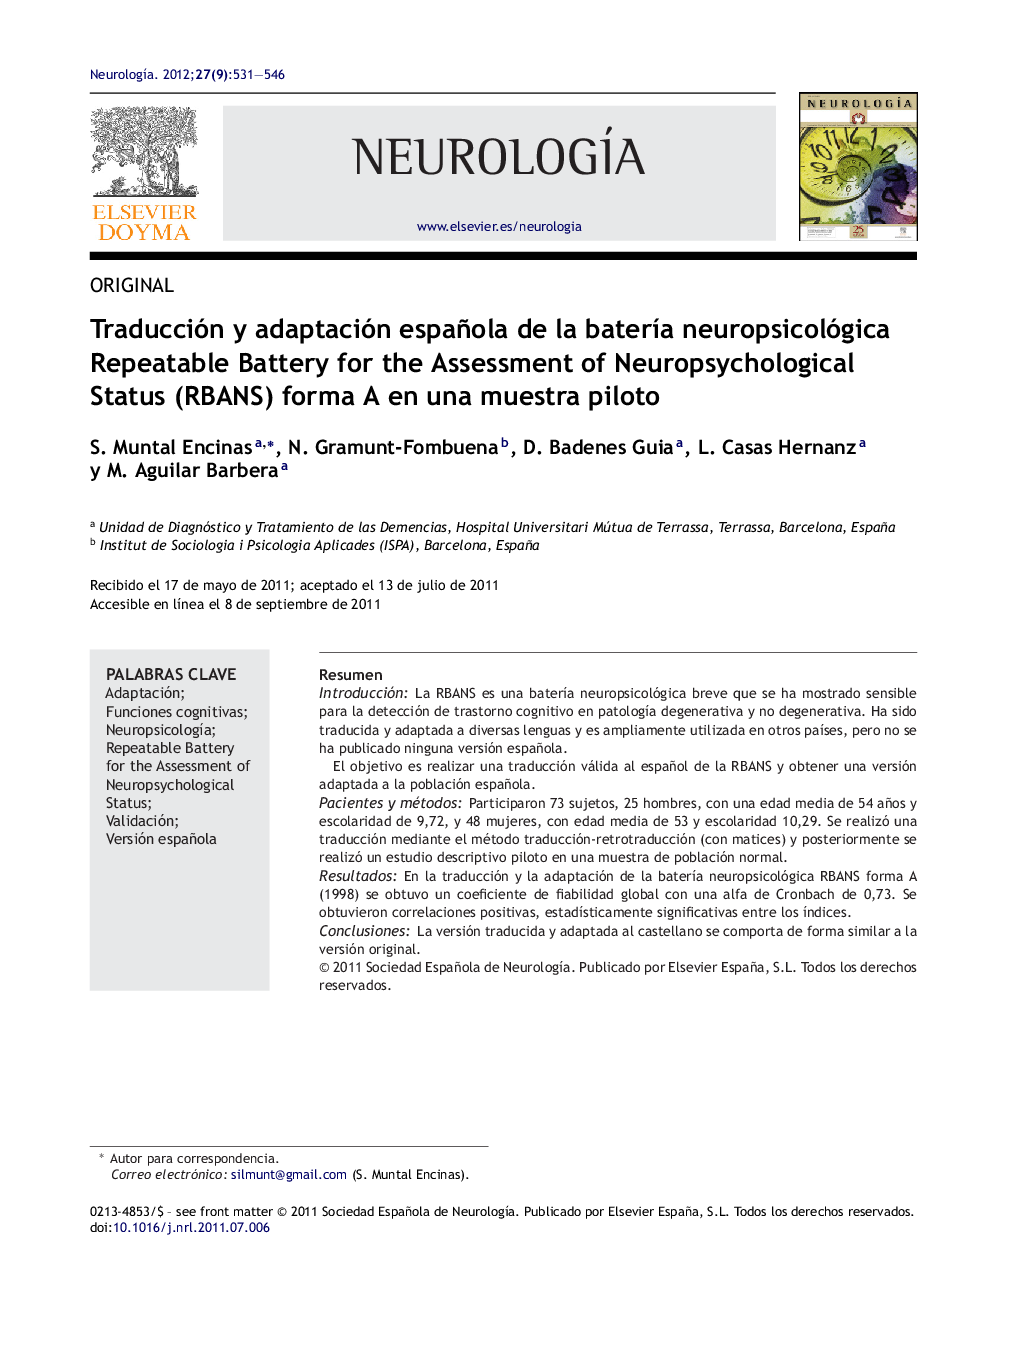 Traducción y adaptación española de la batería neuropsicológica Repeatable Battery for the Assessment of Neuropsychological Status (RBANS) forma A en una muestra piloto